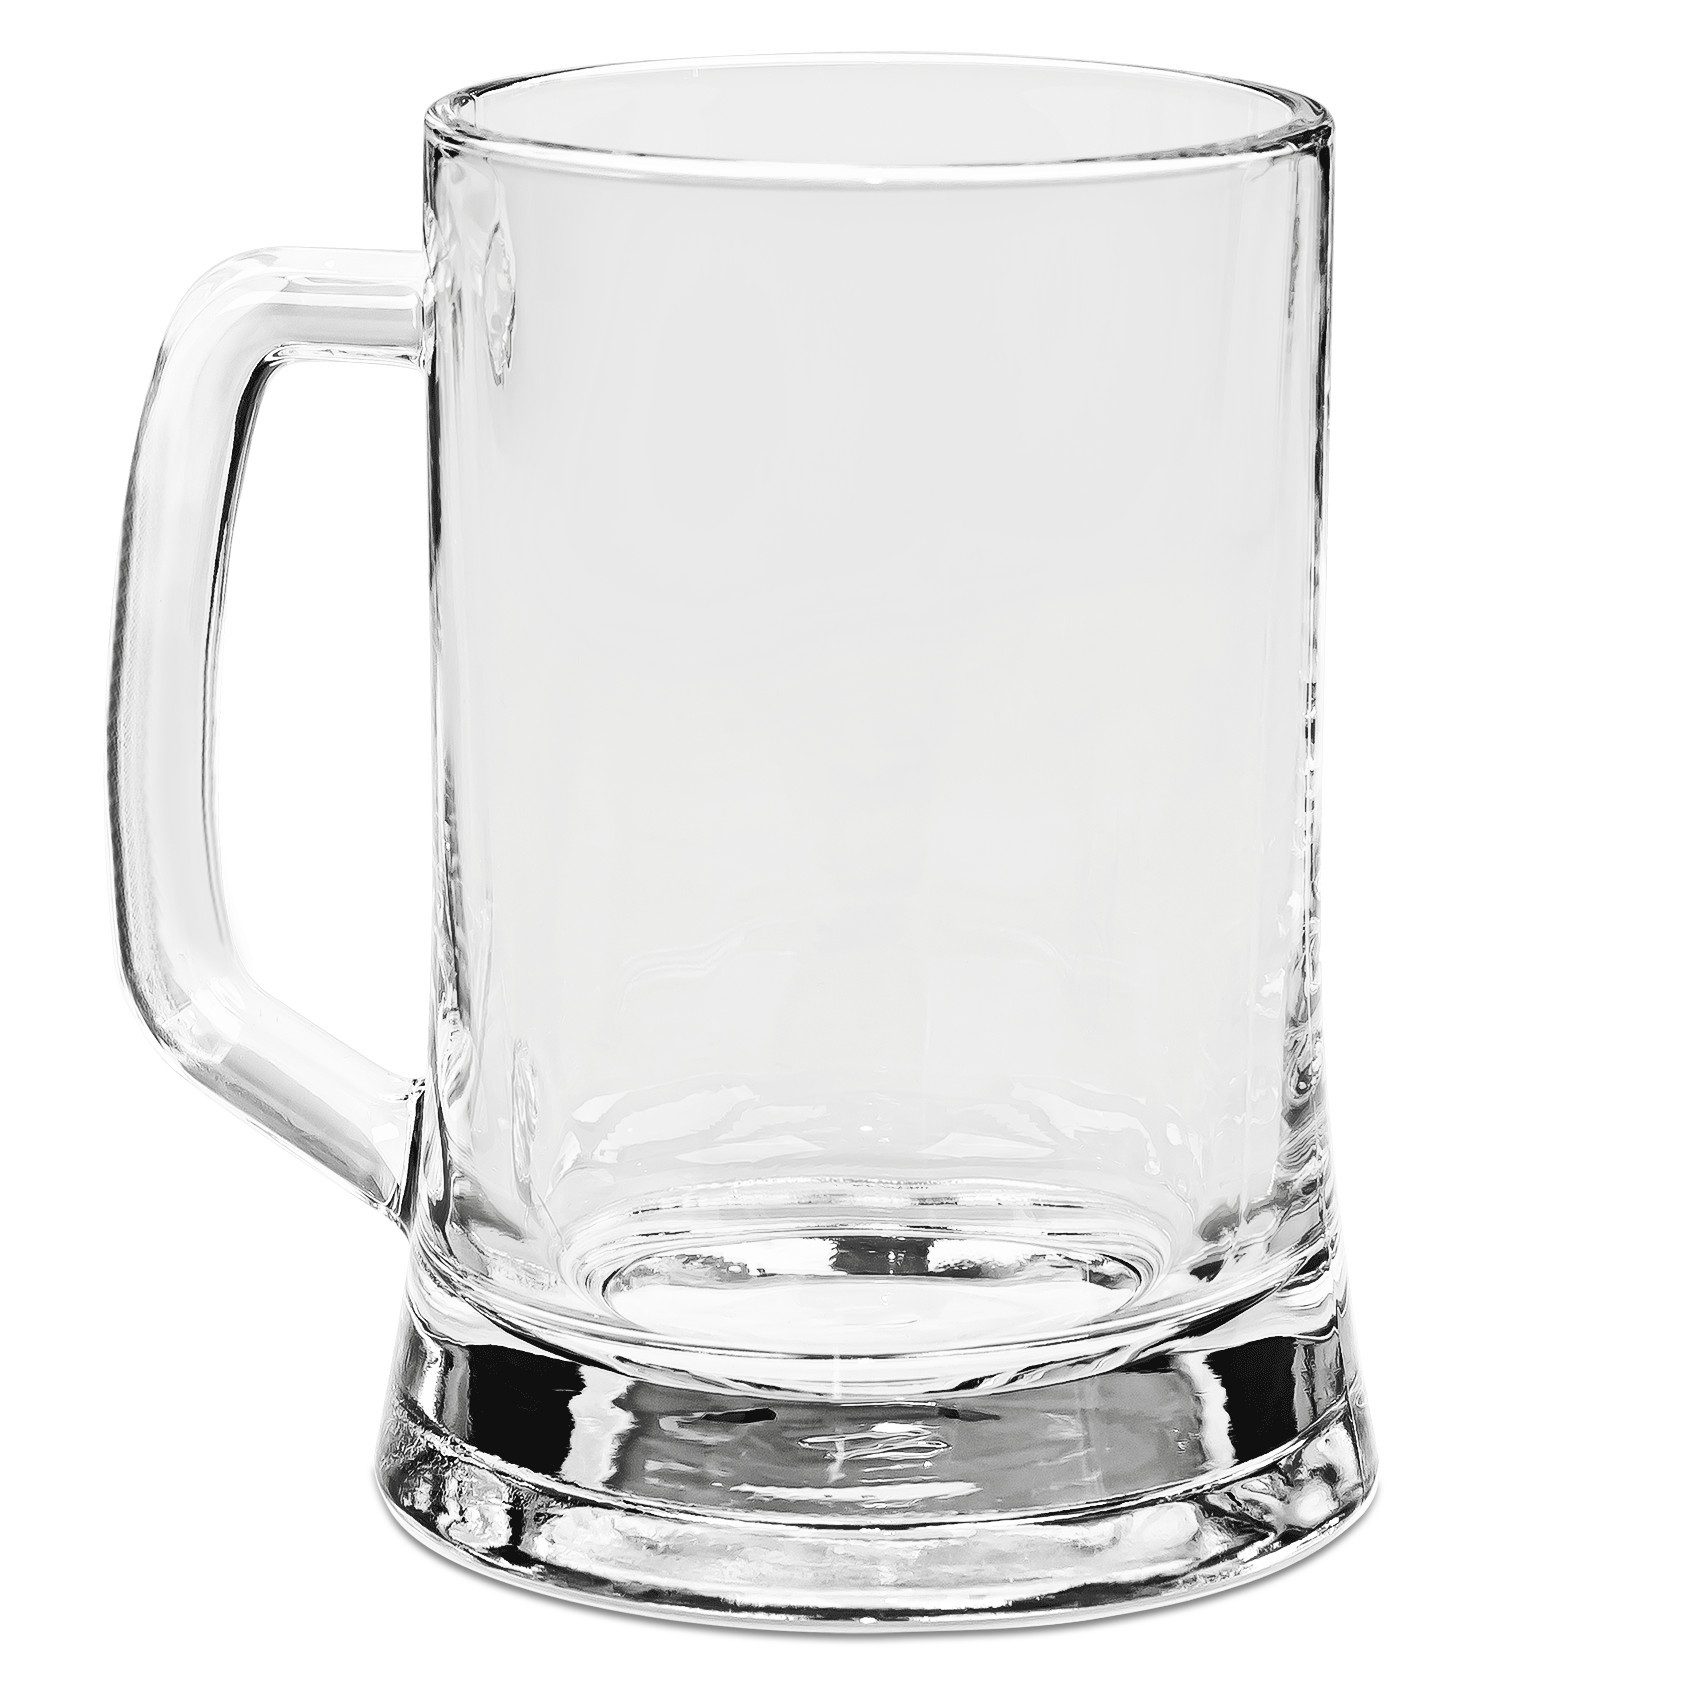 Mr. & Mrs. Panda Bierkrug Einhorn Dame - Transparent - Geschenk, Bierkrug Glas, Einhorn Deko, F, Premium Glas, Elegantes Design